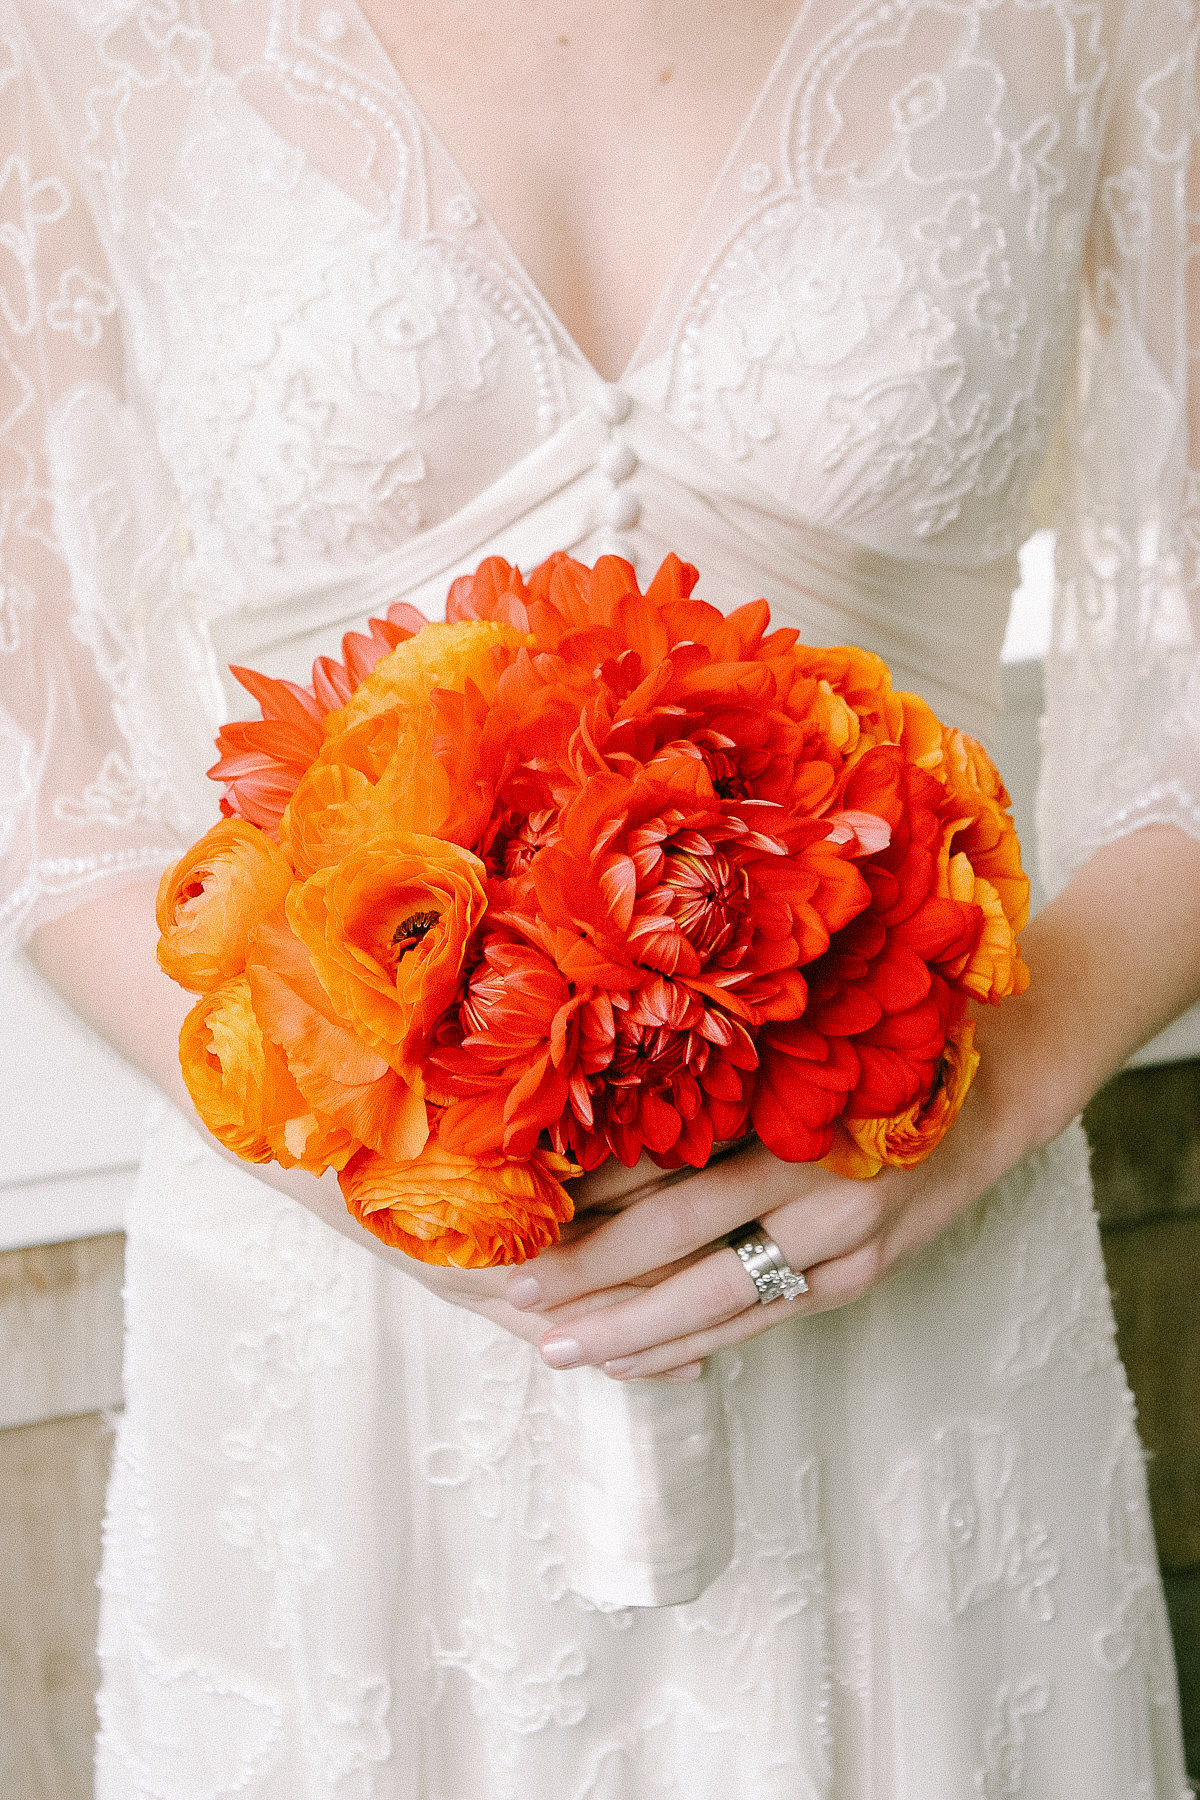 An orange wedding bouquet.